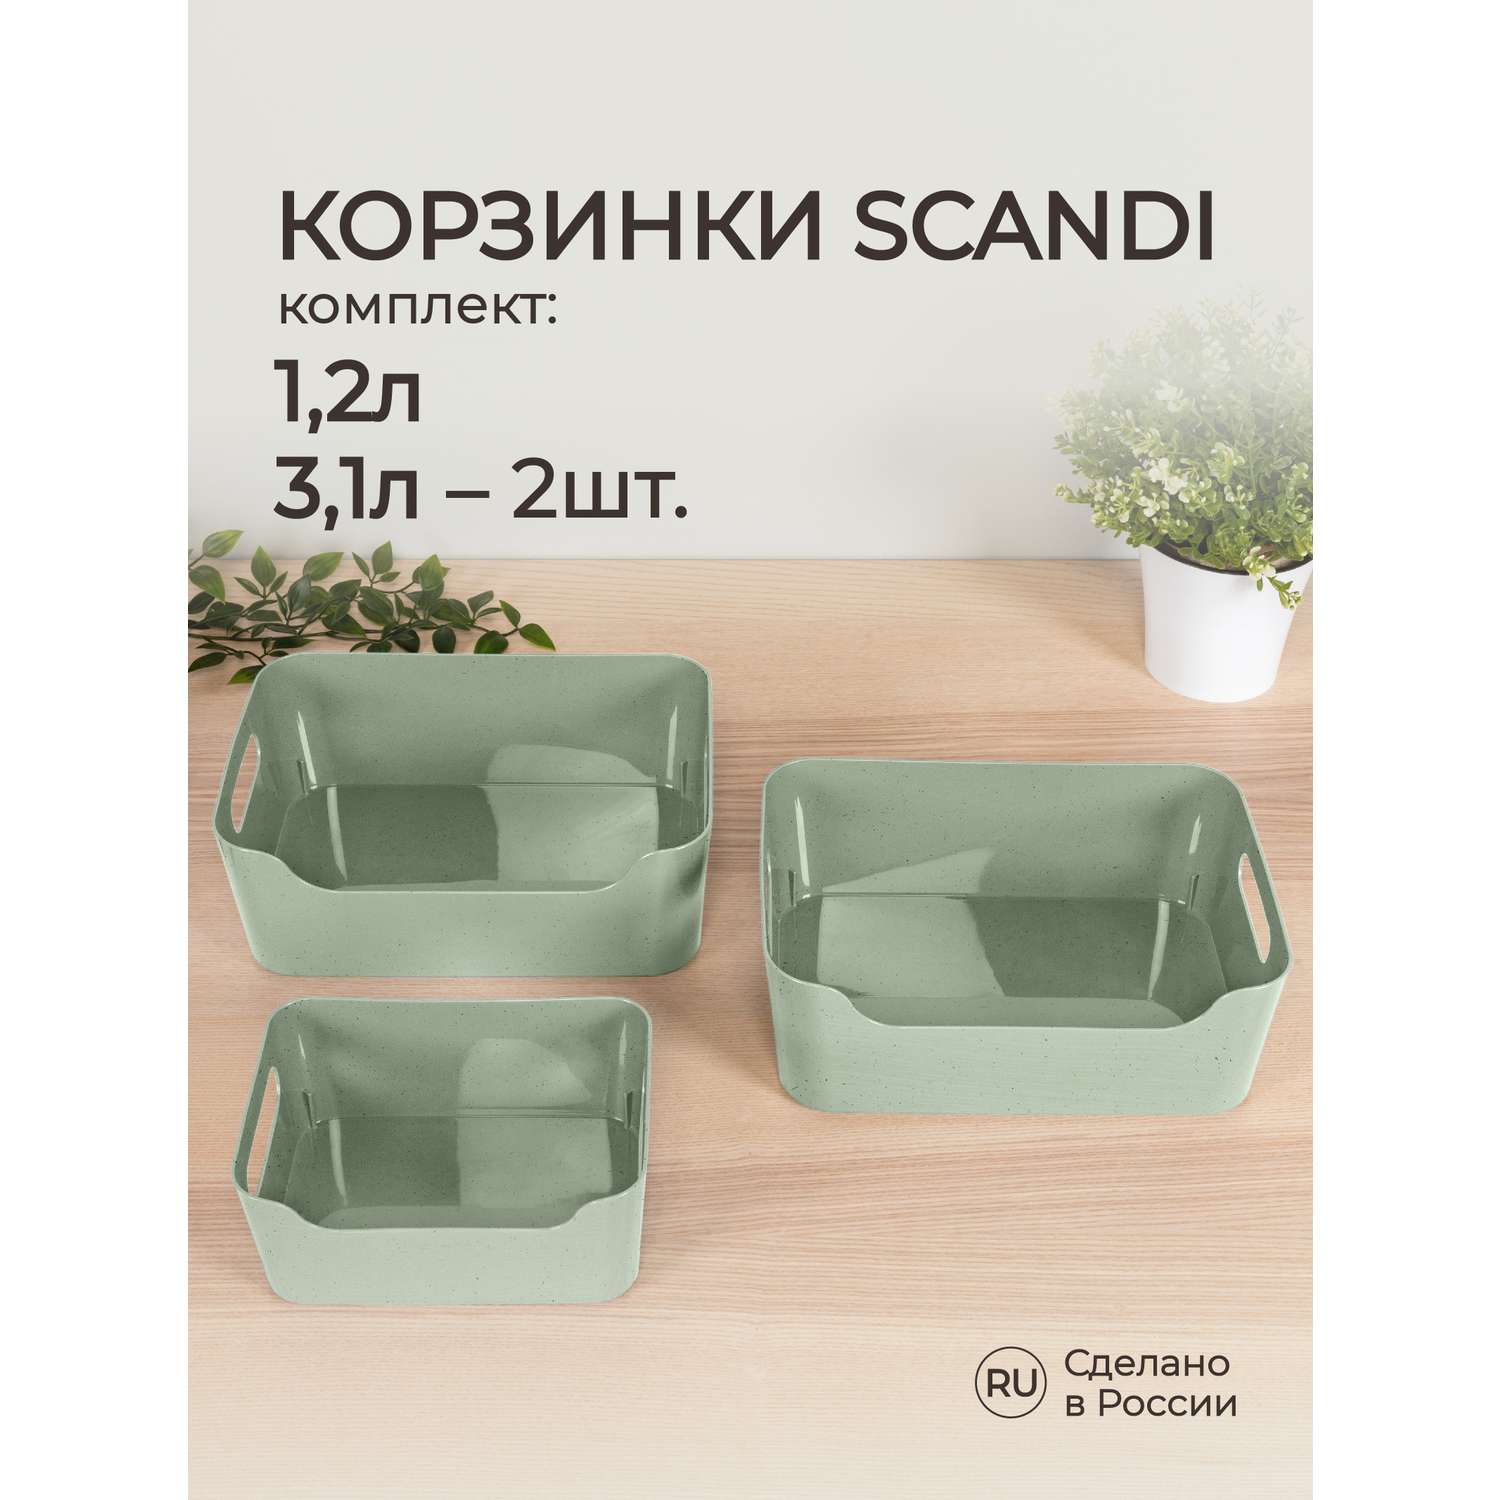 Комплект корзинок Econova универсальных Scandi 3шт 1.2л+2x3.1л зеленый флэк - фото 1